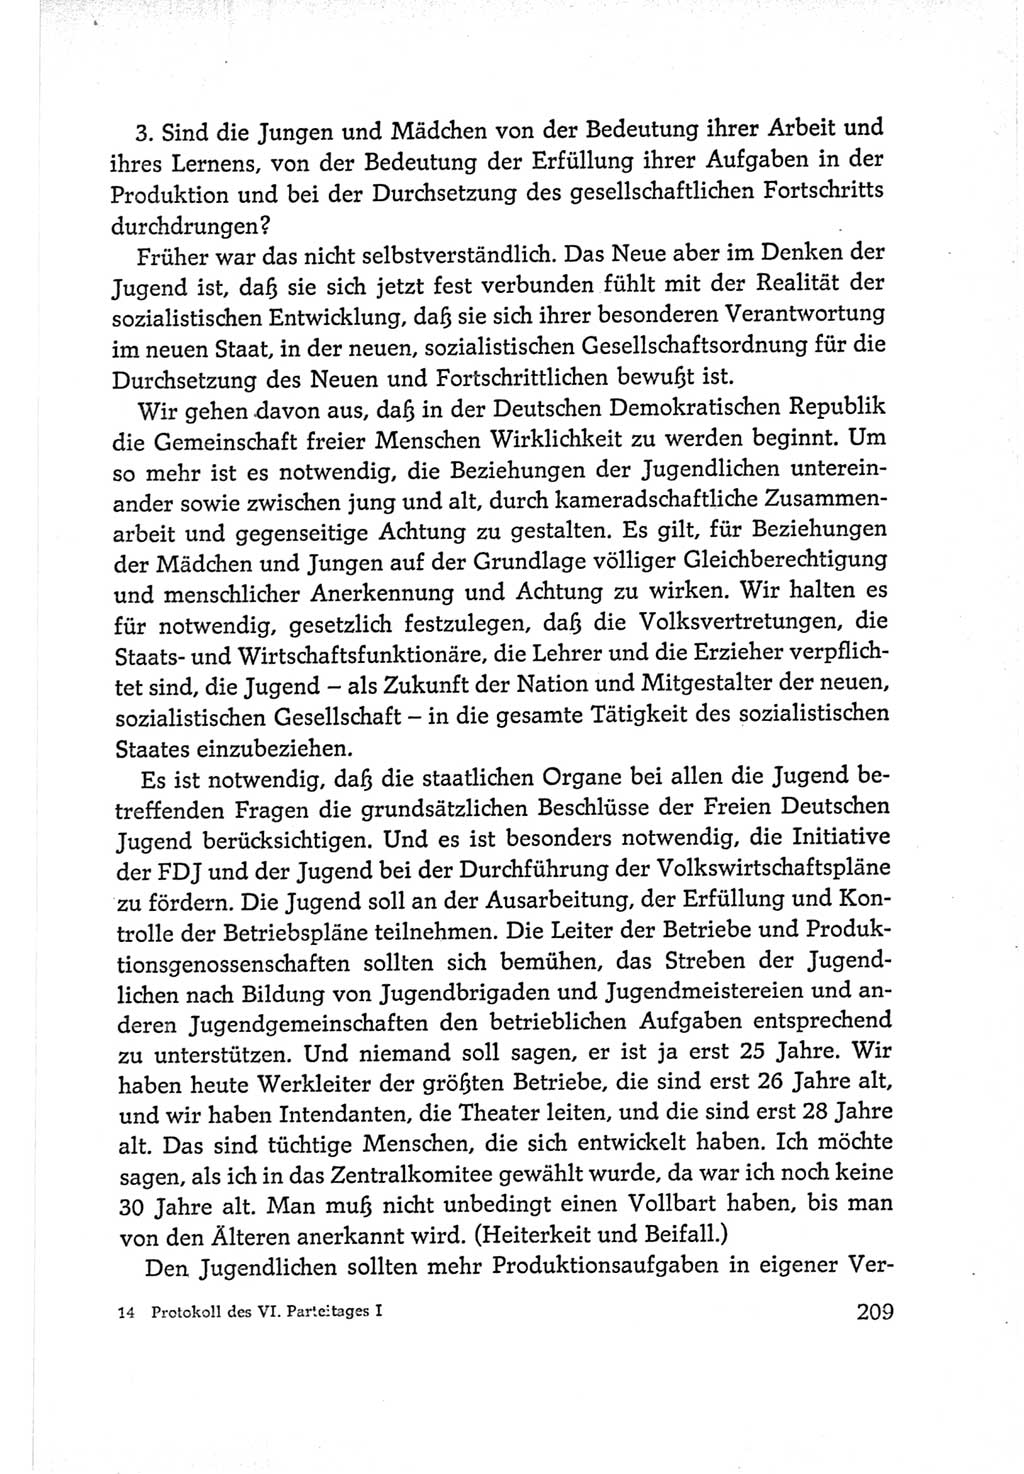 Protokoll der Verhandlungen des Ⅵ. Parteitages der Sozialistischen Einheitspartei Deutschlands (SED) [Deutsche Demokratische Republik (DDR)] 1963, Band Ⅰ, Seite 209 (Prot. Verh. Ⅵ. PT SED DDR 1963, Bd. Ⅰ, S. 209)